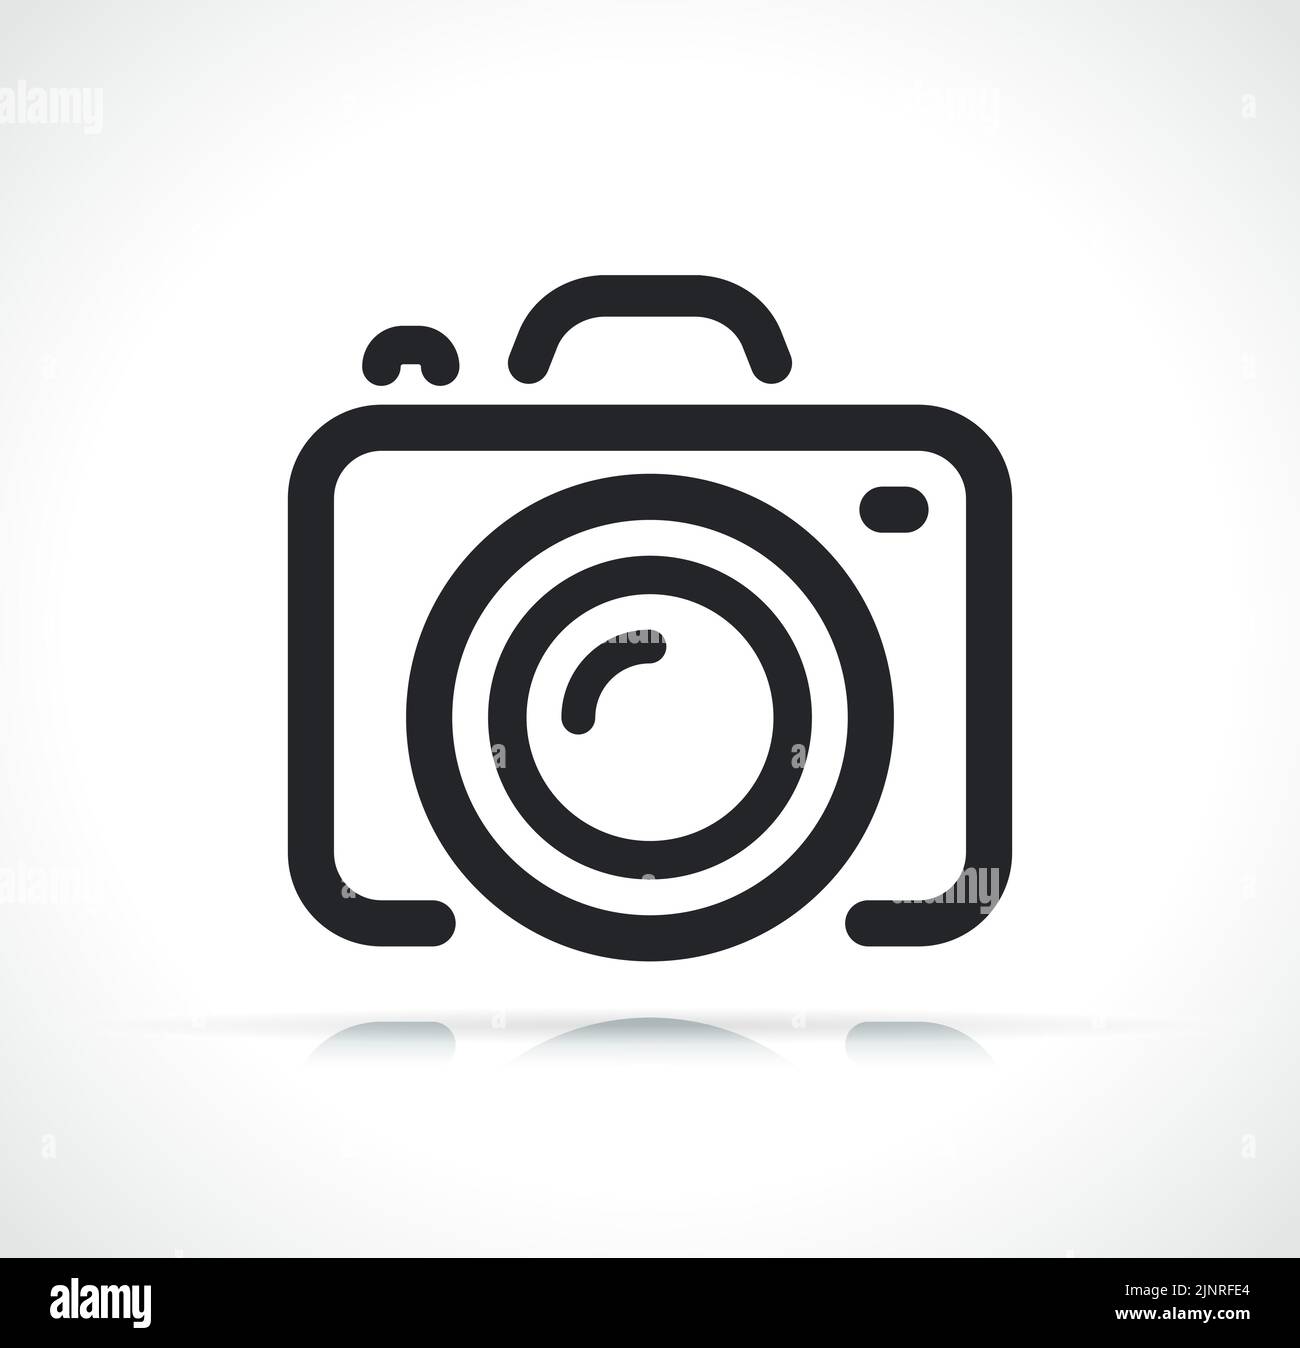 illustration de l'icône de la caméra ou de la photocamera en ligne fine Illustration de Vecteur